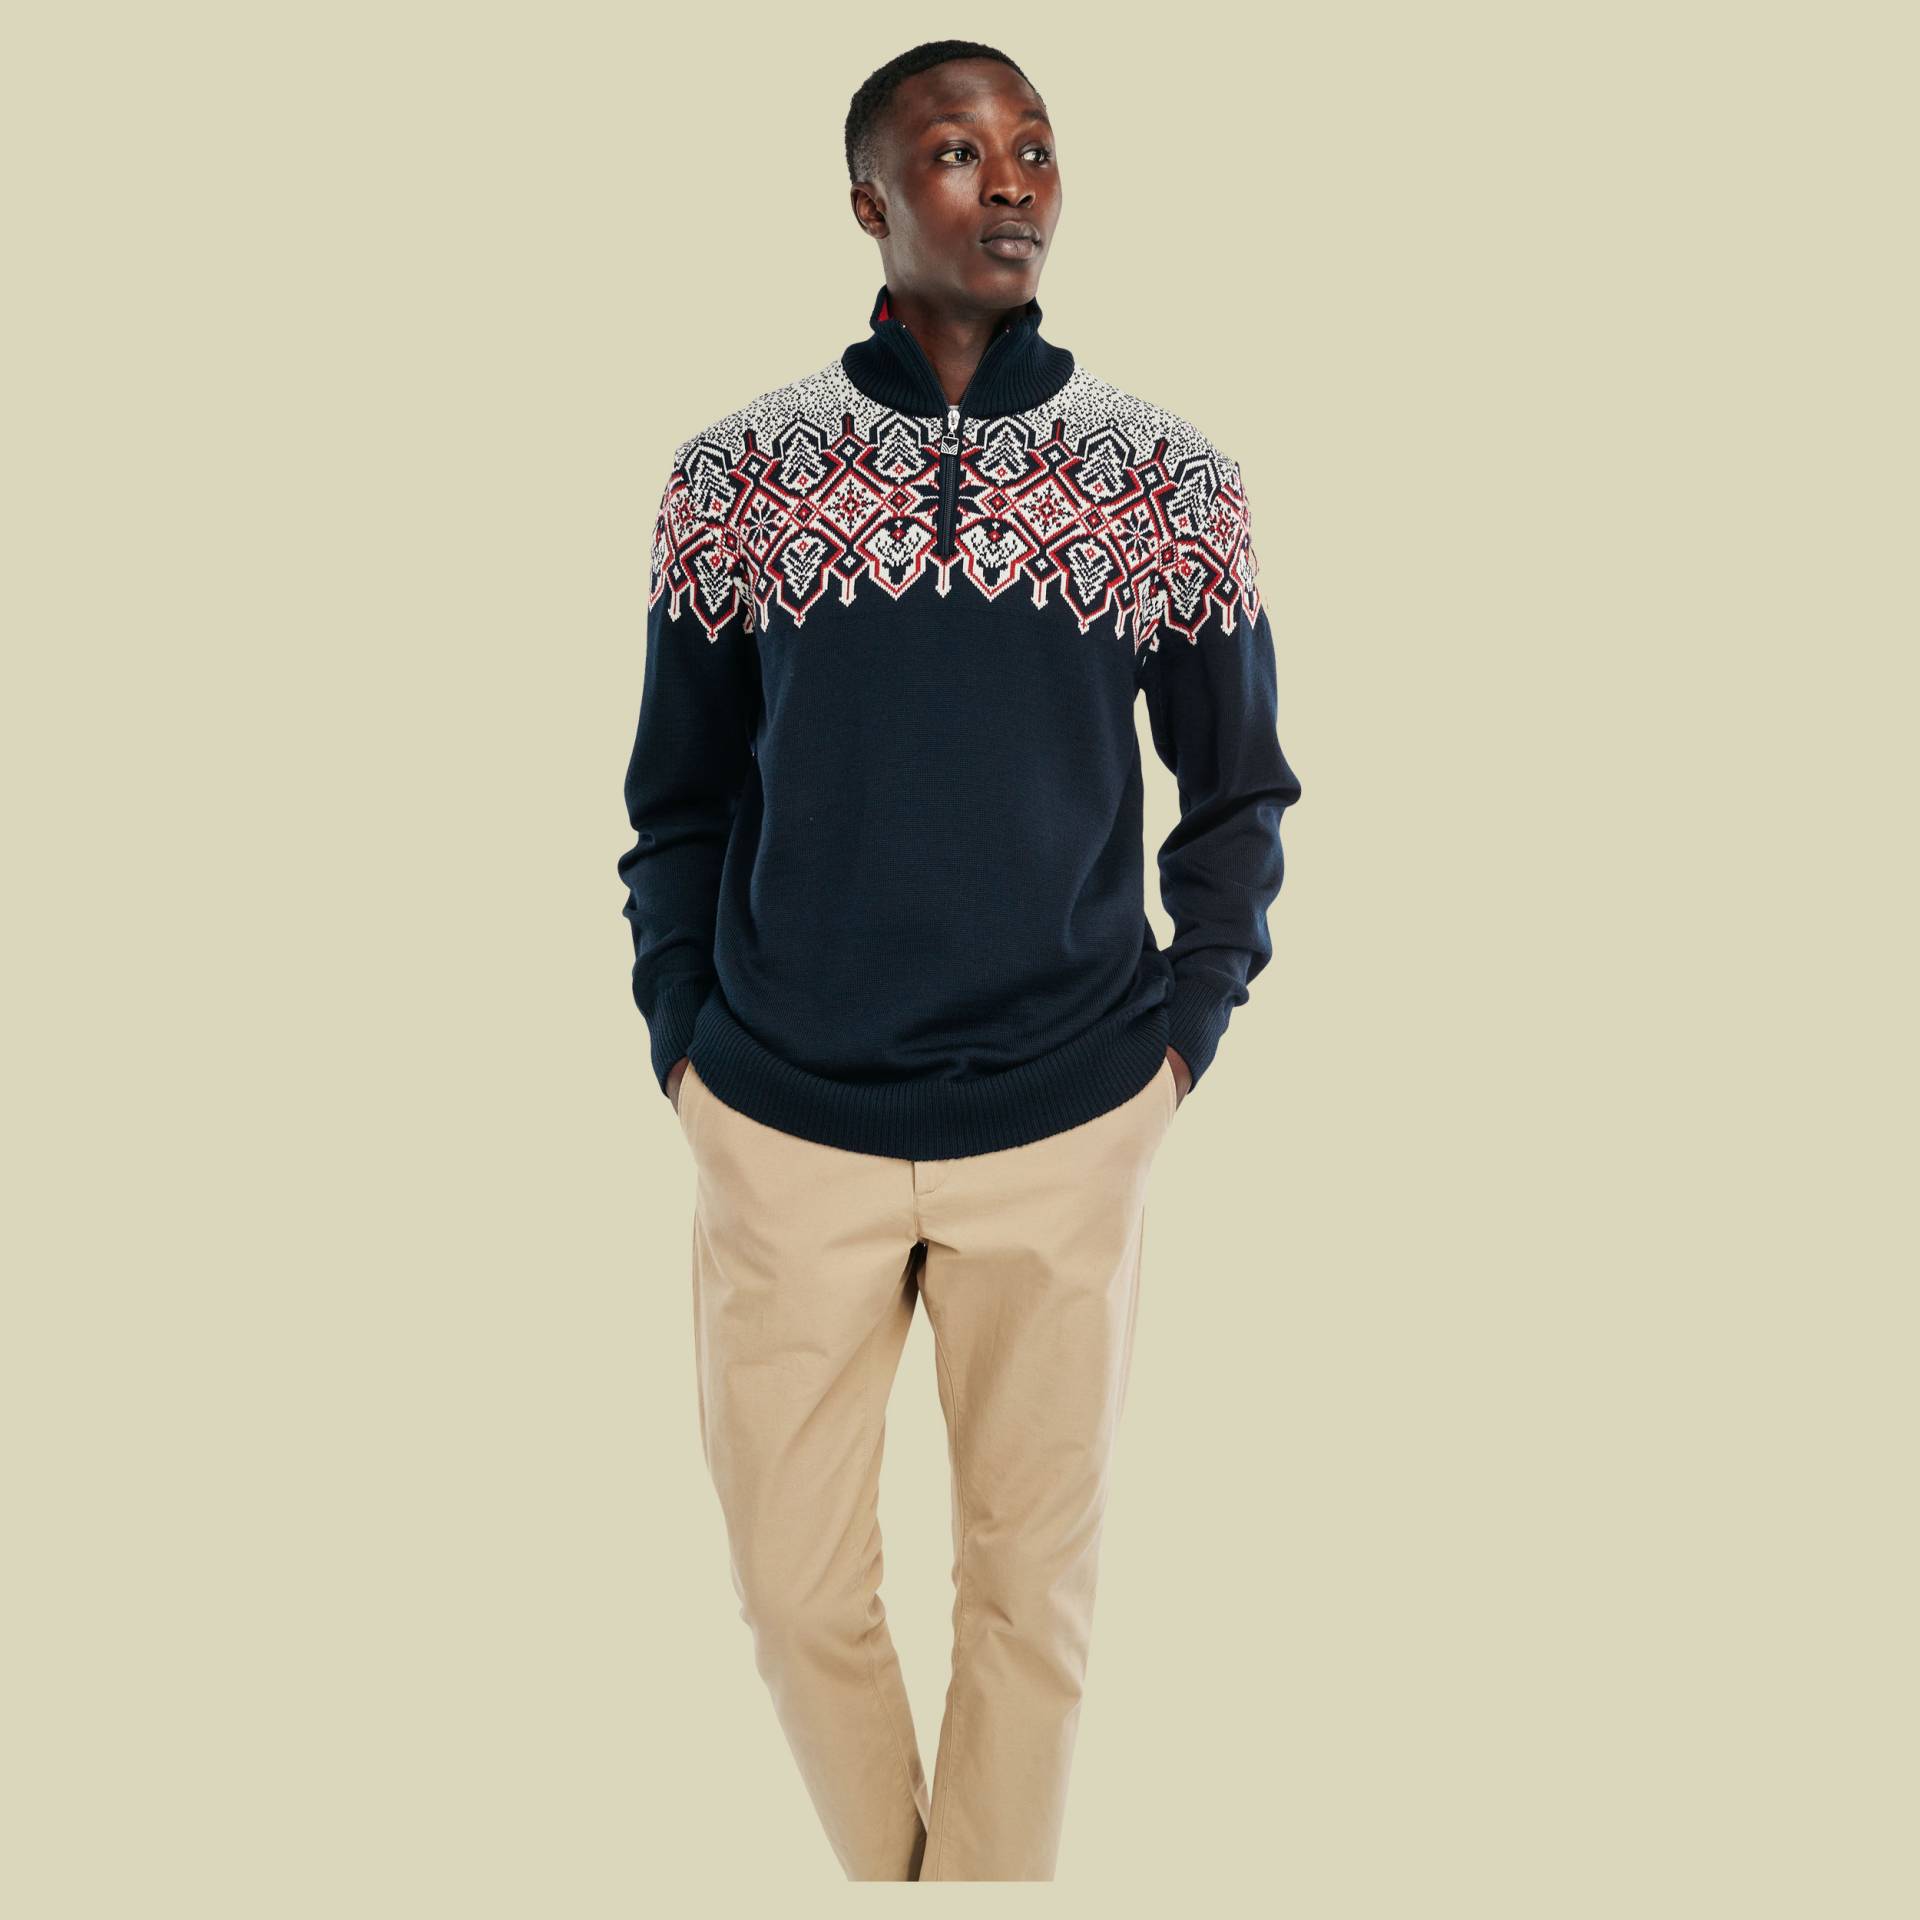 Winterland Sweater Men Größe L  Farbe navy-off white-raspberry von Dale of Norway